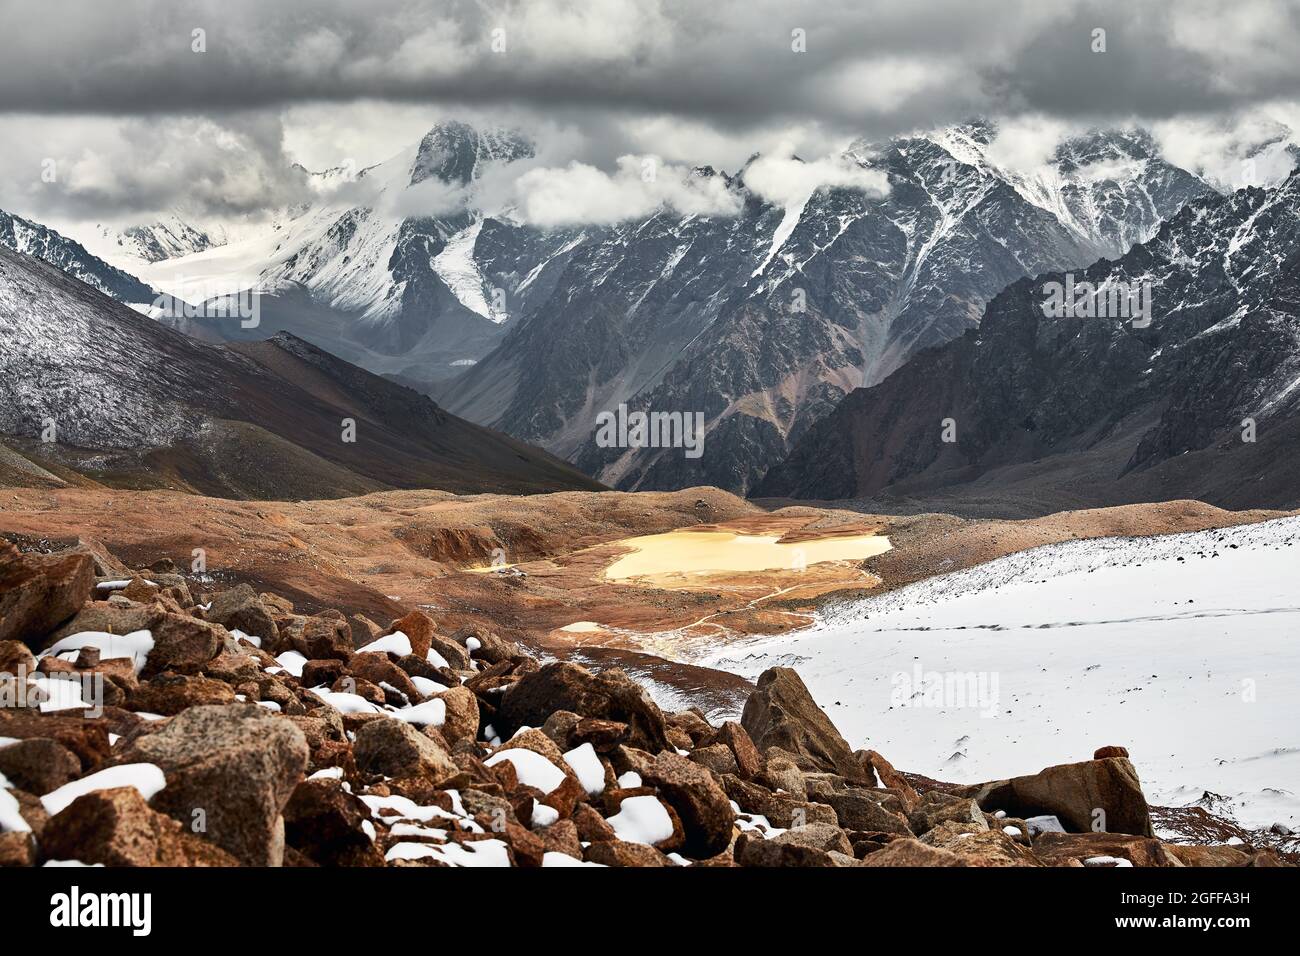 Wunderschöne Landschaft des Gletschers und des schneebedeckten Bergsees am wolkenbedeckten Himmel in Tien Shan, Kasachstan. Stockfoto